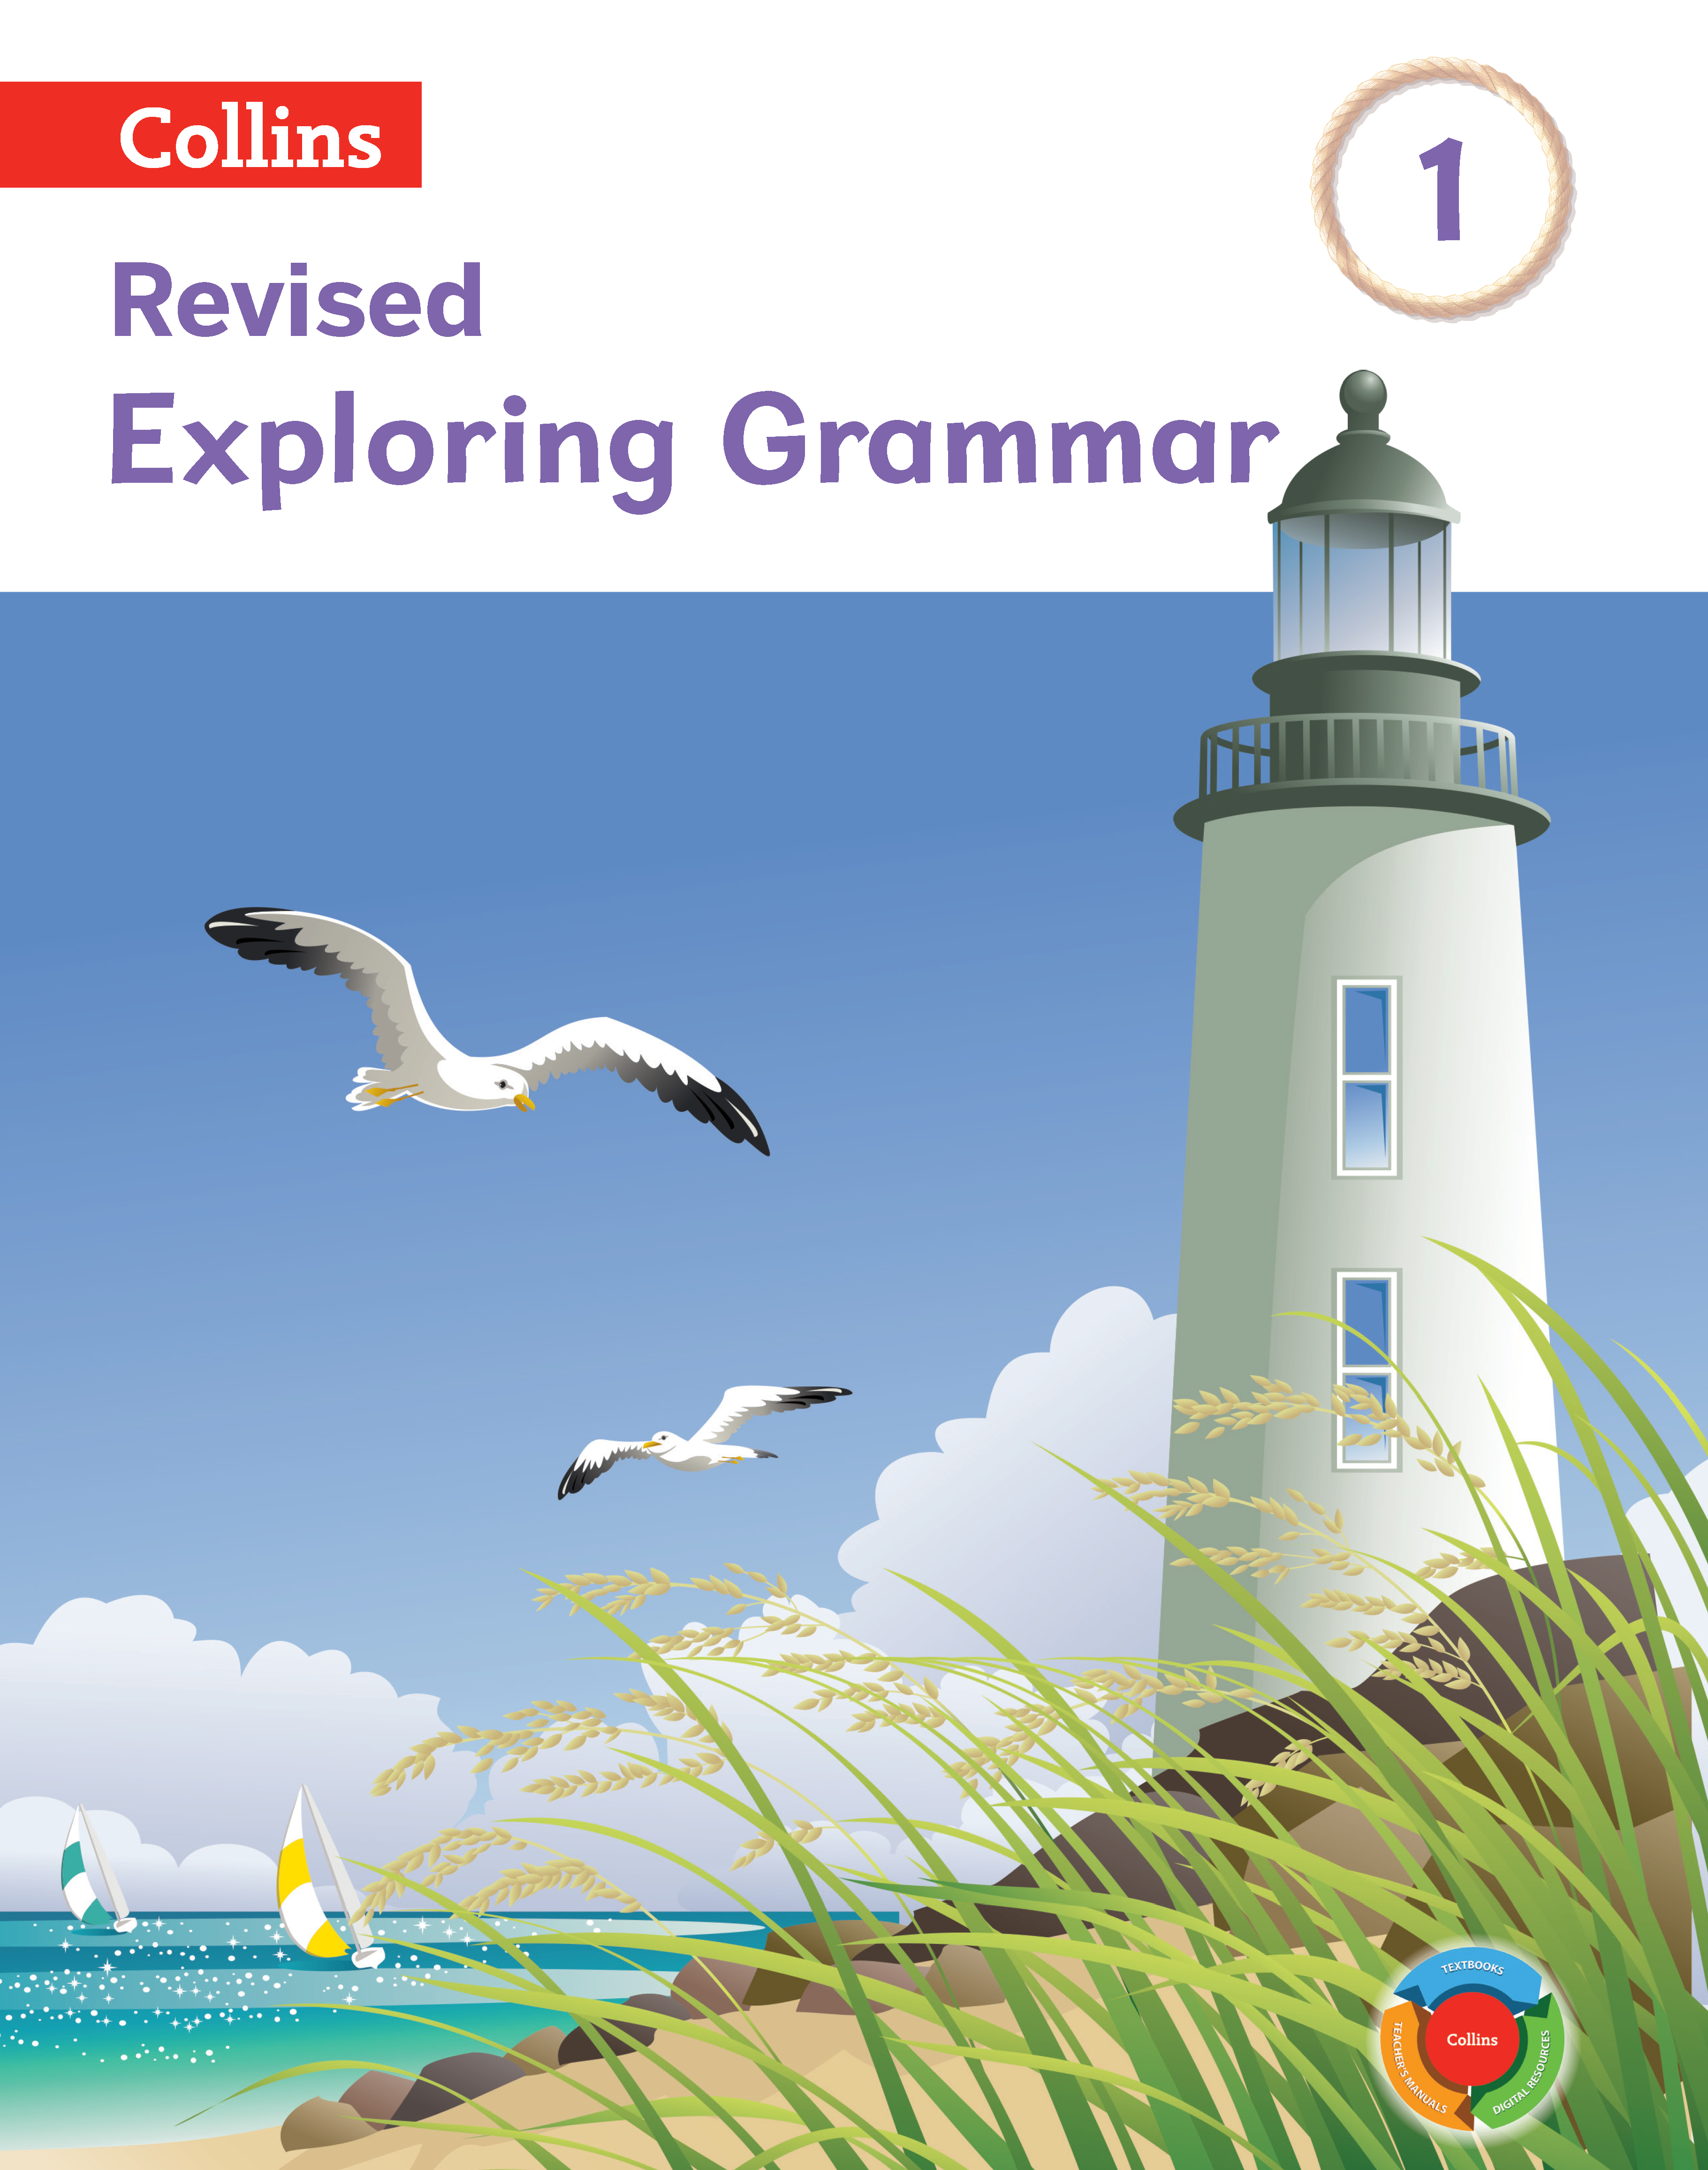 Exploring grammar